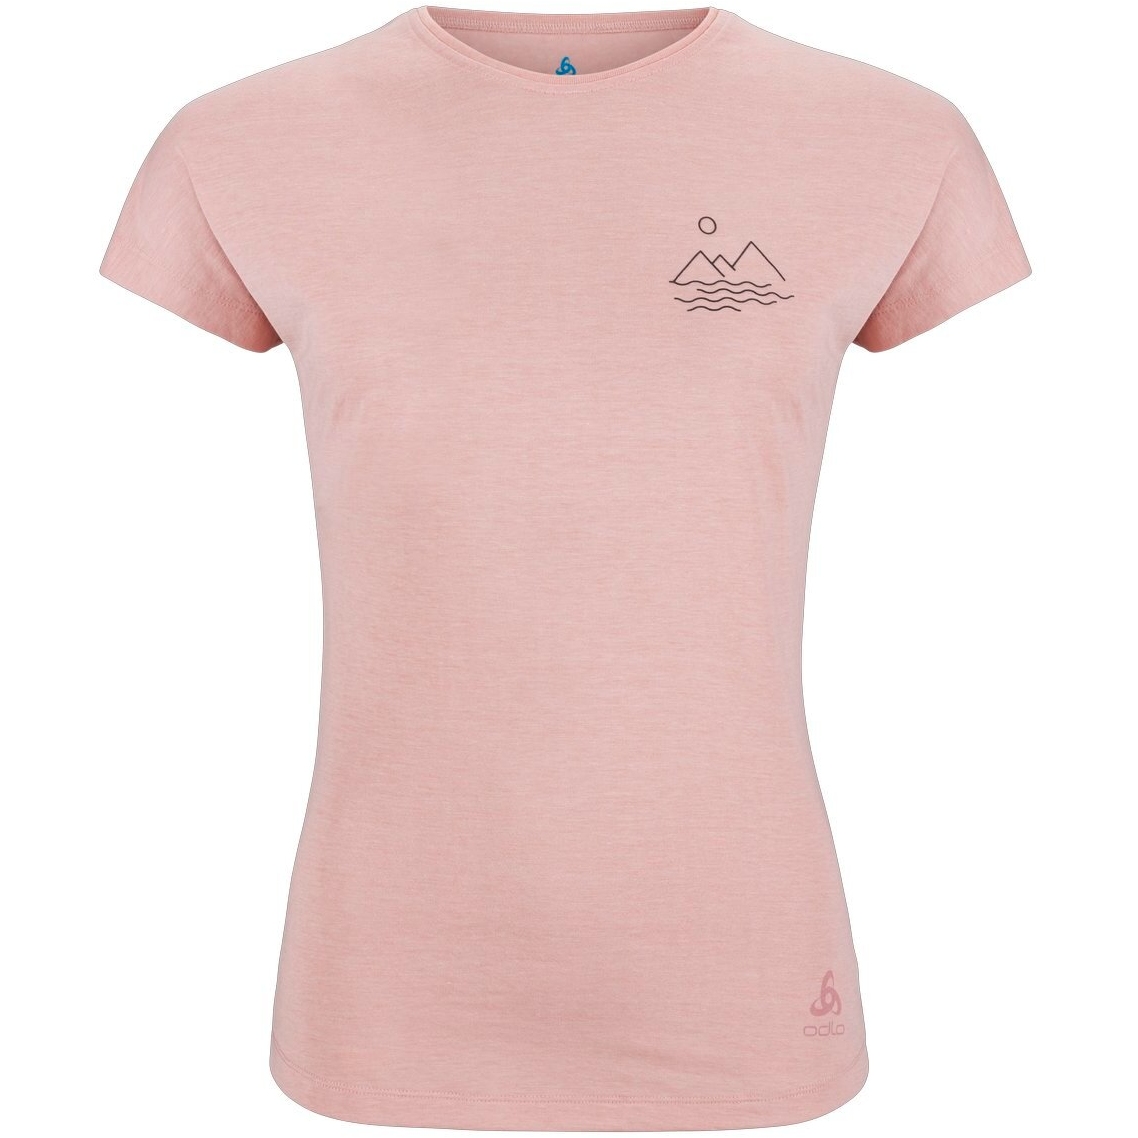 Productfoto van Odlo Ascent 365 Sharp T-Shirt Dames - pale mauve melange